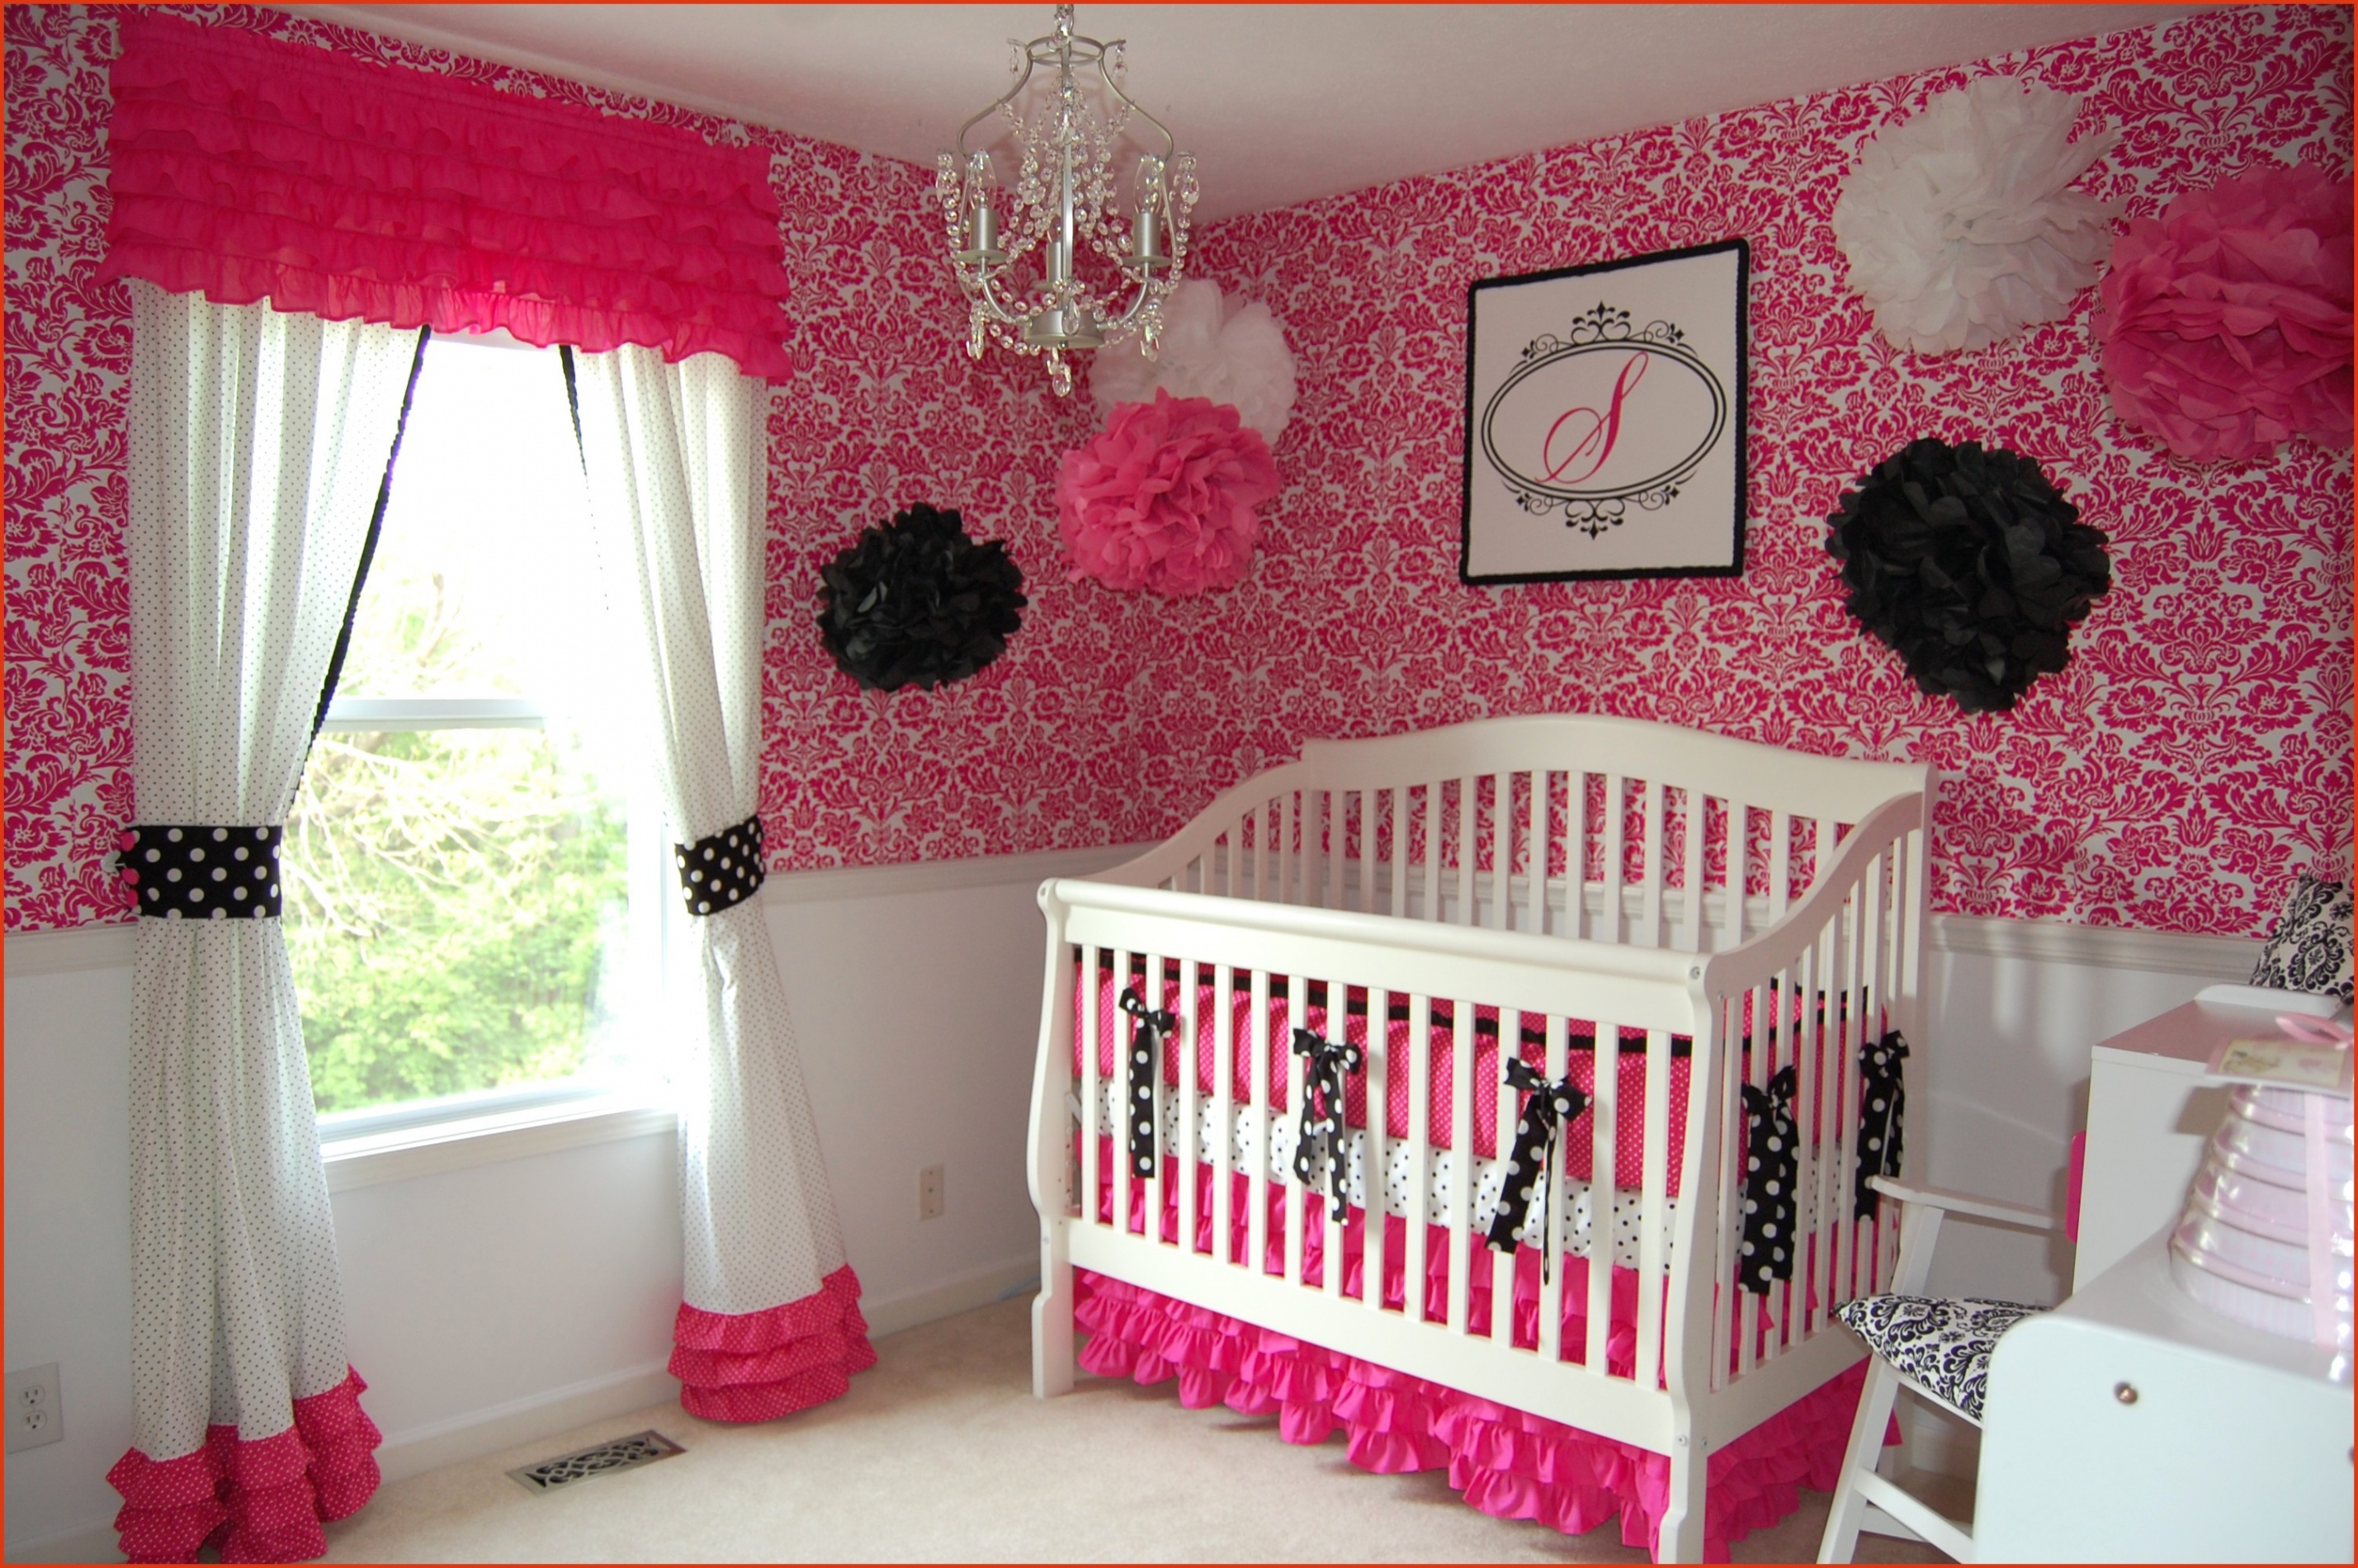 Décoration de la chambre de bébé : quel type d'objet pouvez-vous utiliser ?